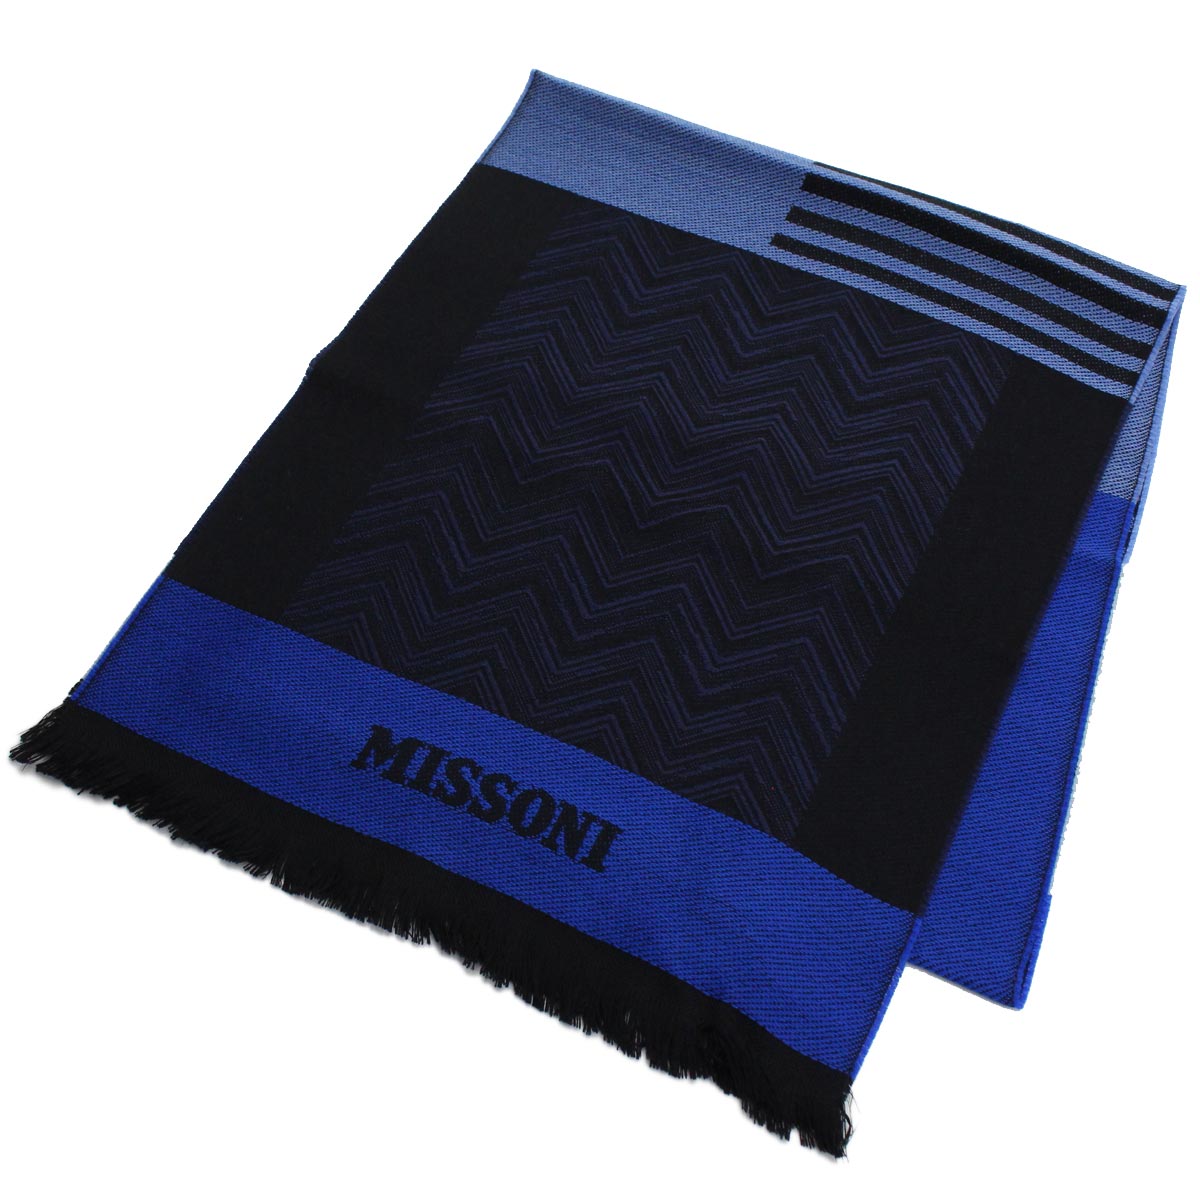 ミッソーニ MISSONI ウール マフラー 0853 1 ブラック ブルー系 メンズ レディース warm-01 SSサーチ